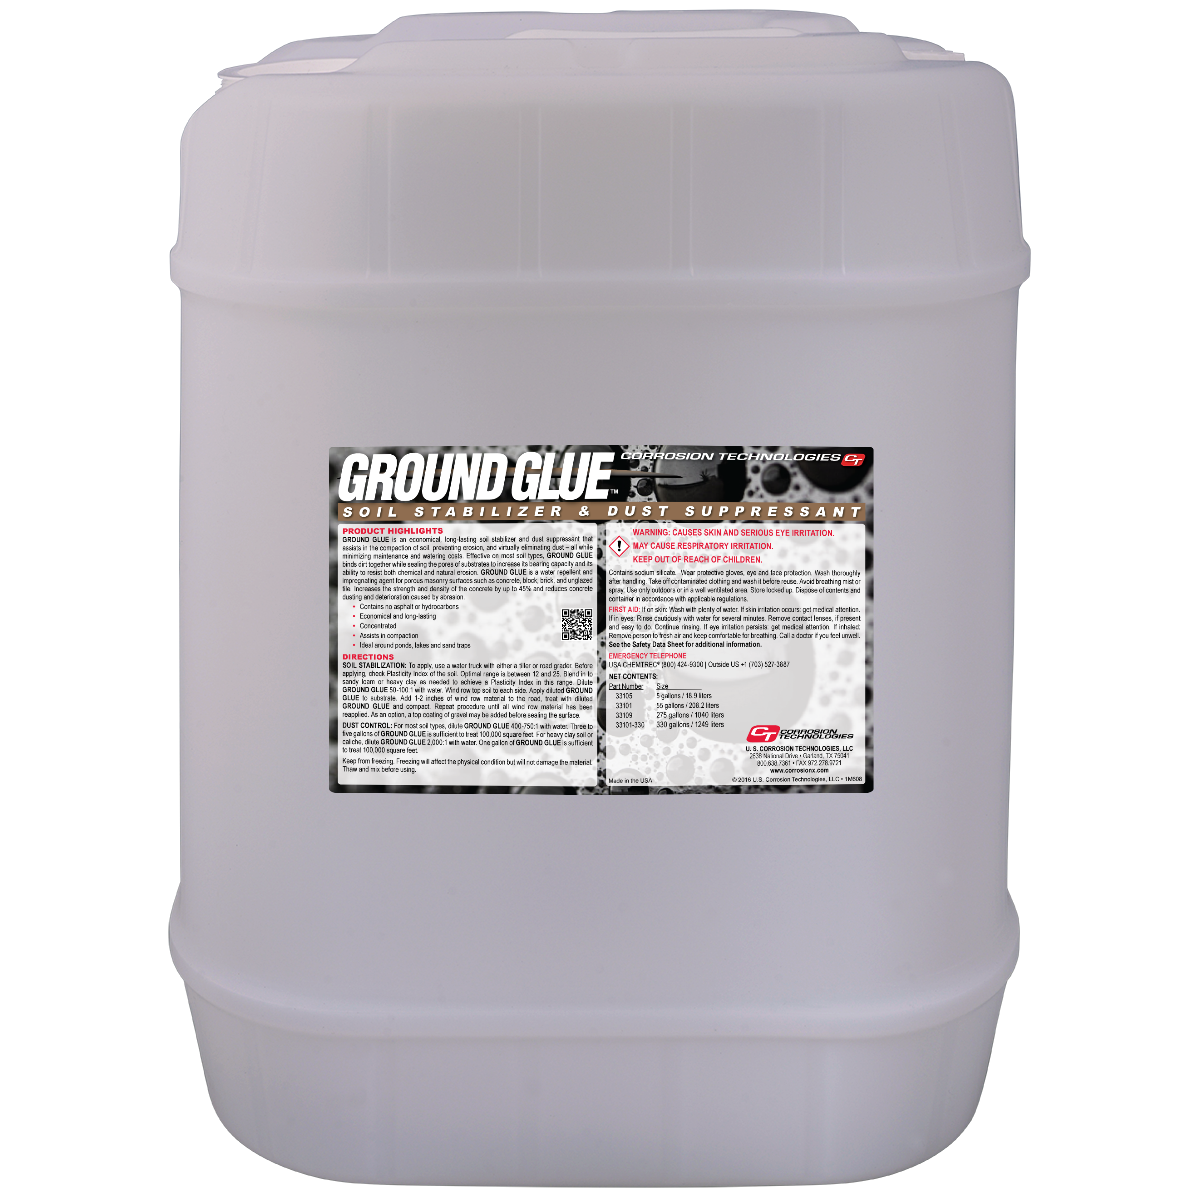 Ground Glue Soil Stabilizer